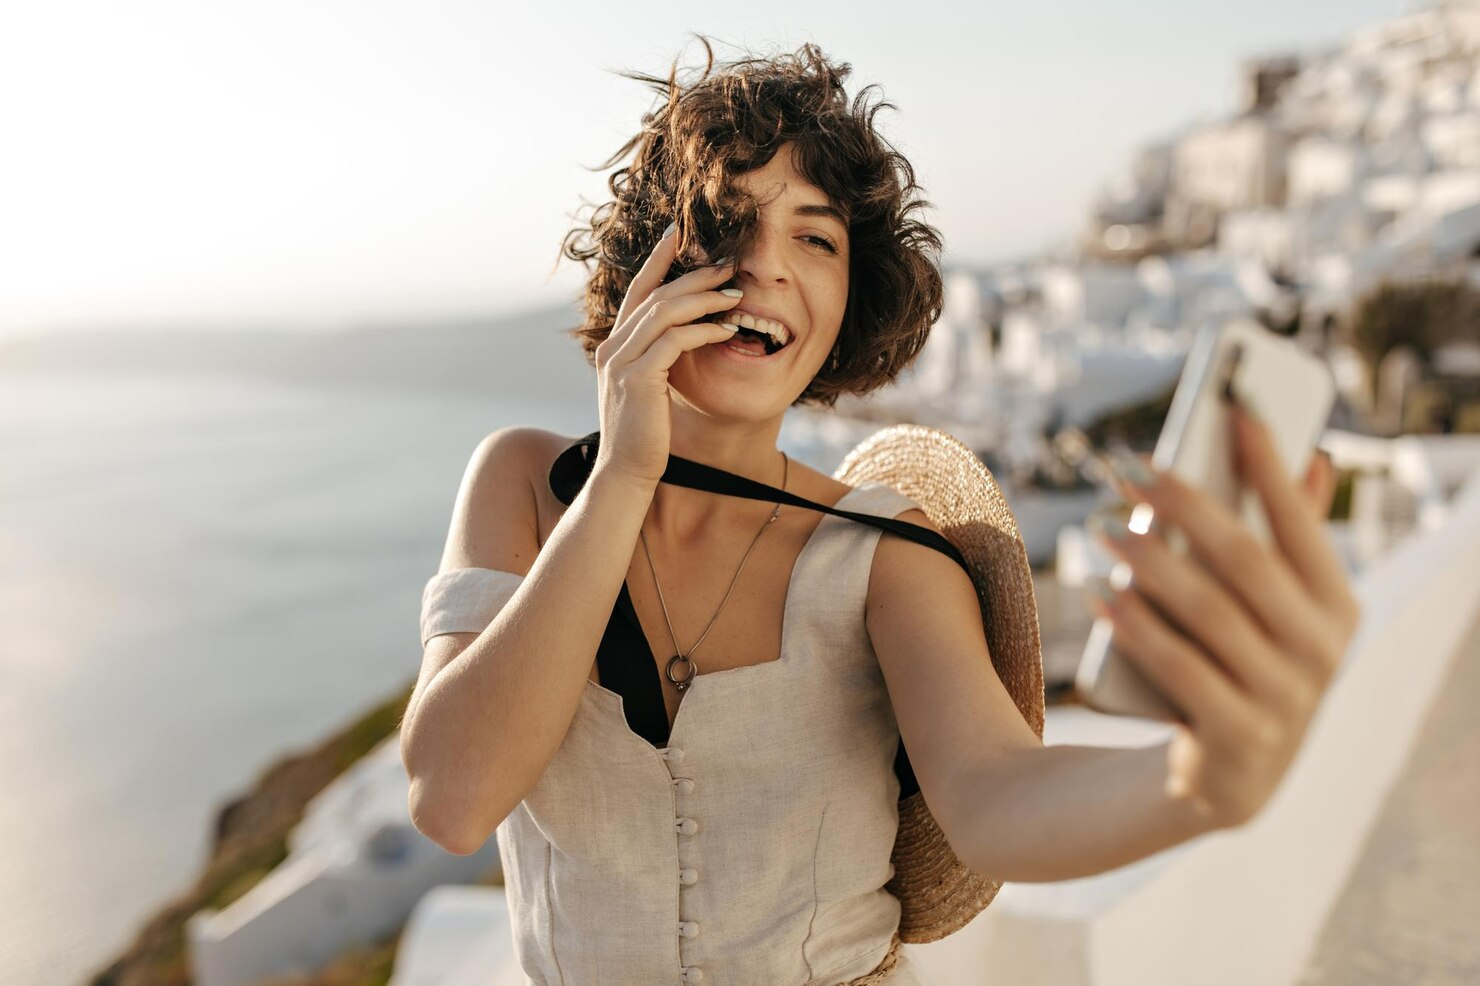 A lady in beige dress taking a selfie in a Greek city.